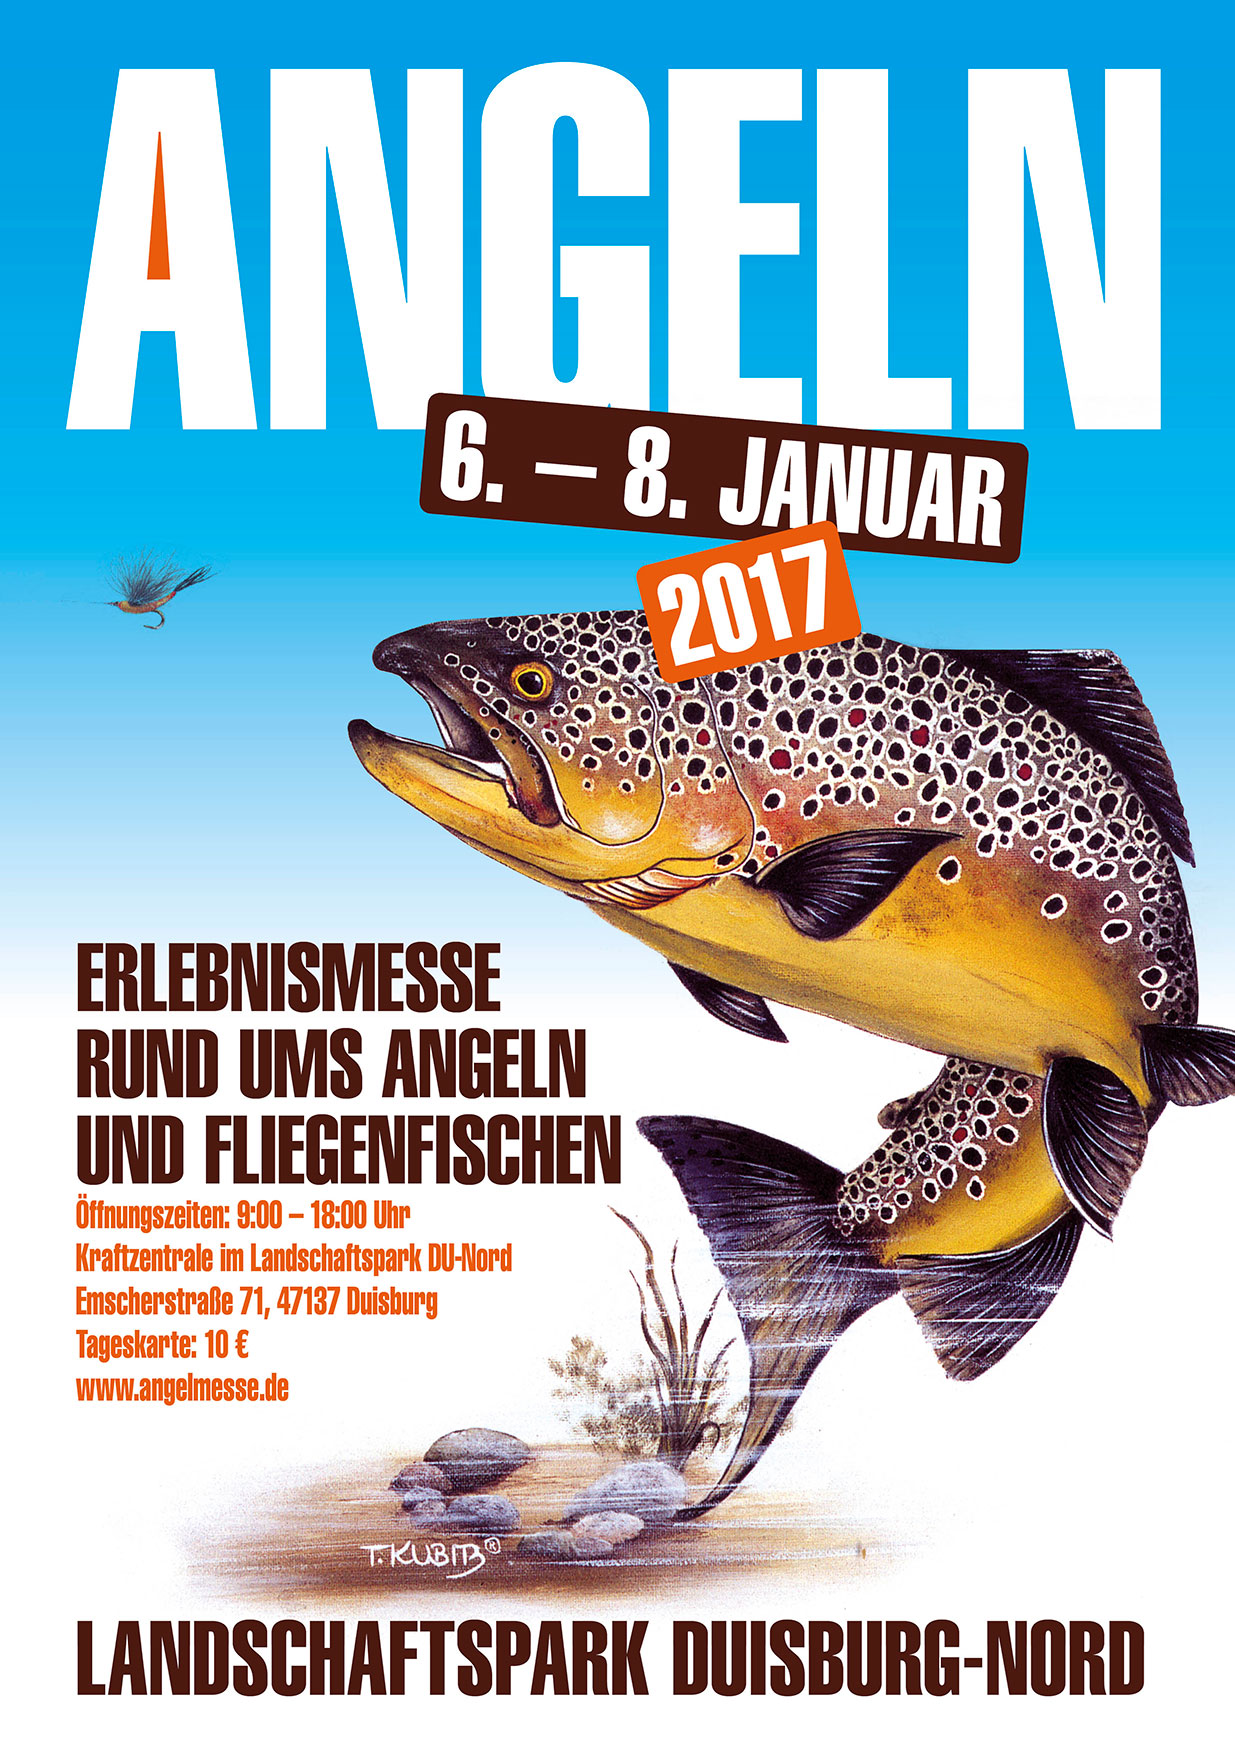 Schon mal notieren: Die Messe ANGELN in Duisburg findet vom 6. bis 8. Januar 2017 statt.